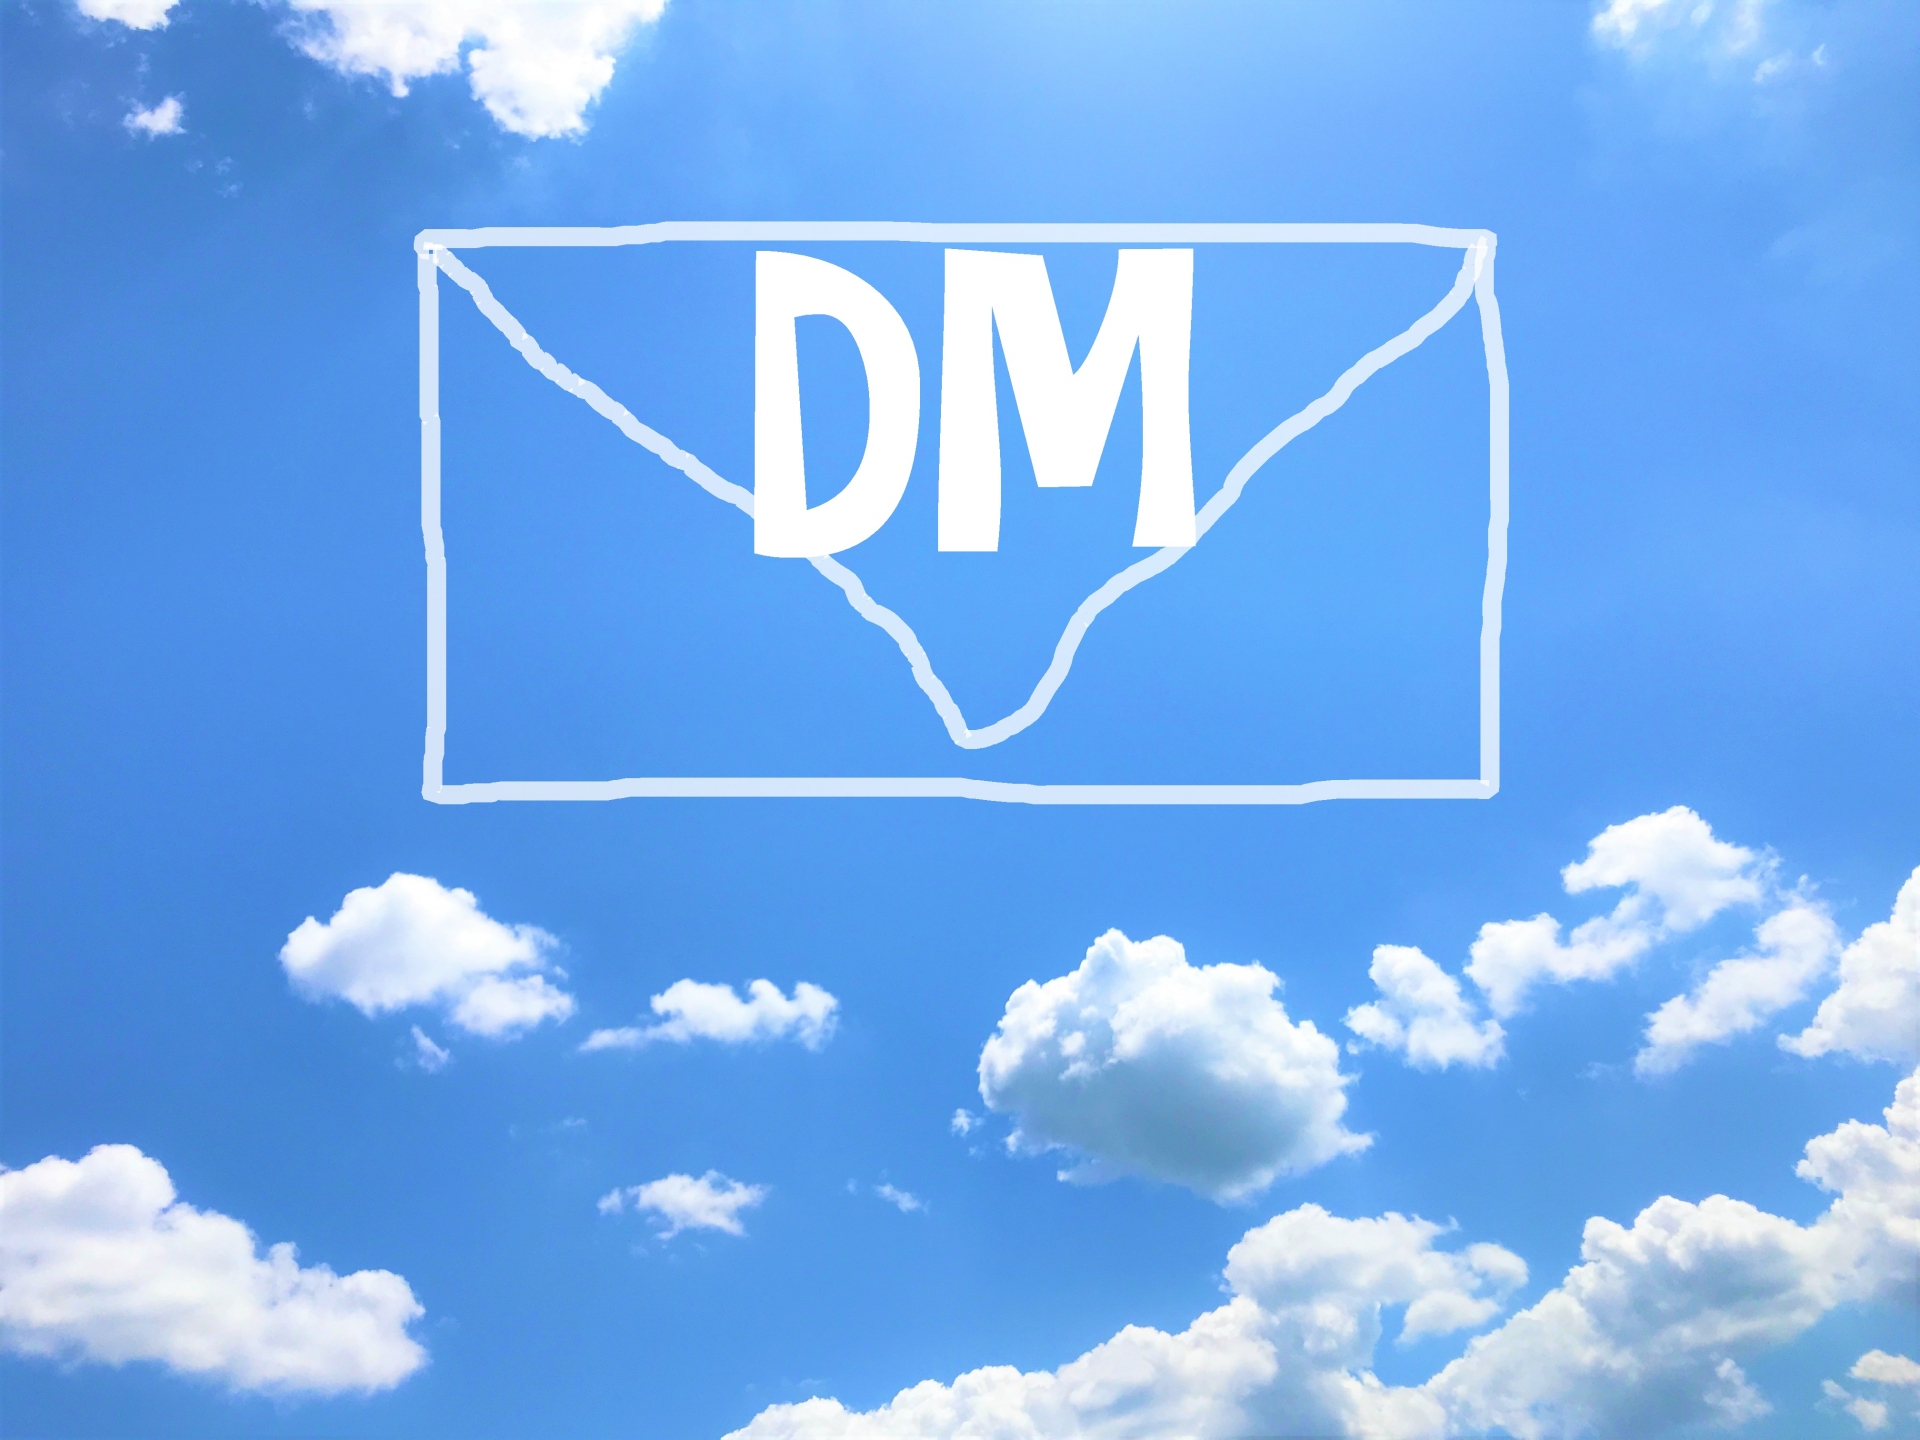 DM(ダイレクトメール)を使ってうまく集客がしたい！と思っていませんか？セルマーケなら、DMの印刷から発送までの依頼や企業リストの購入などができて経営戦略に役立てることができるので、おすすめですよ。